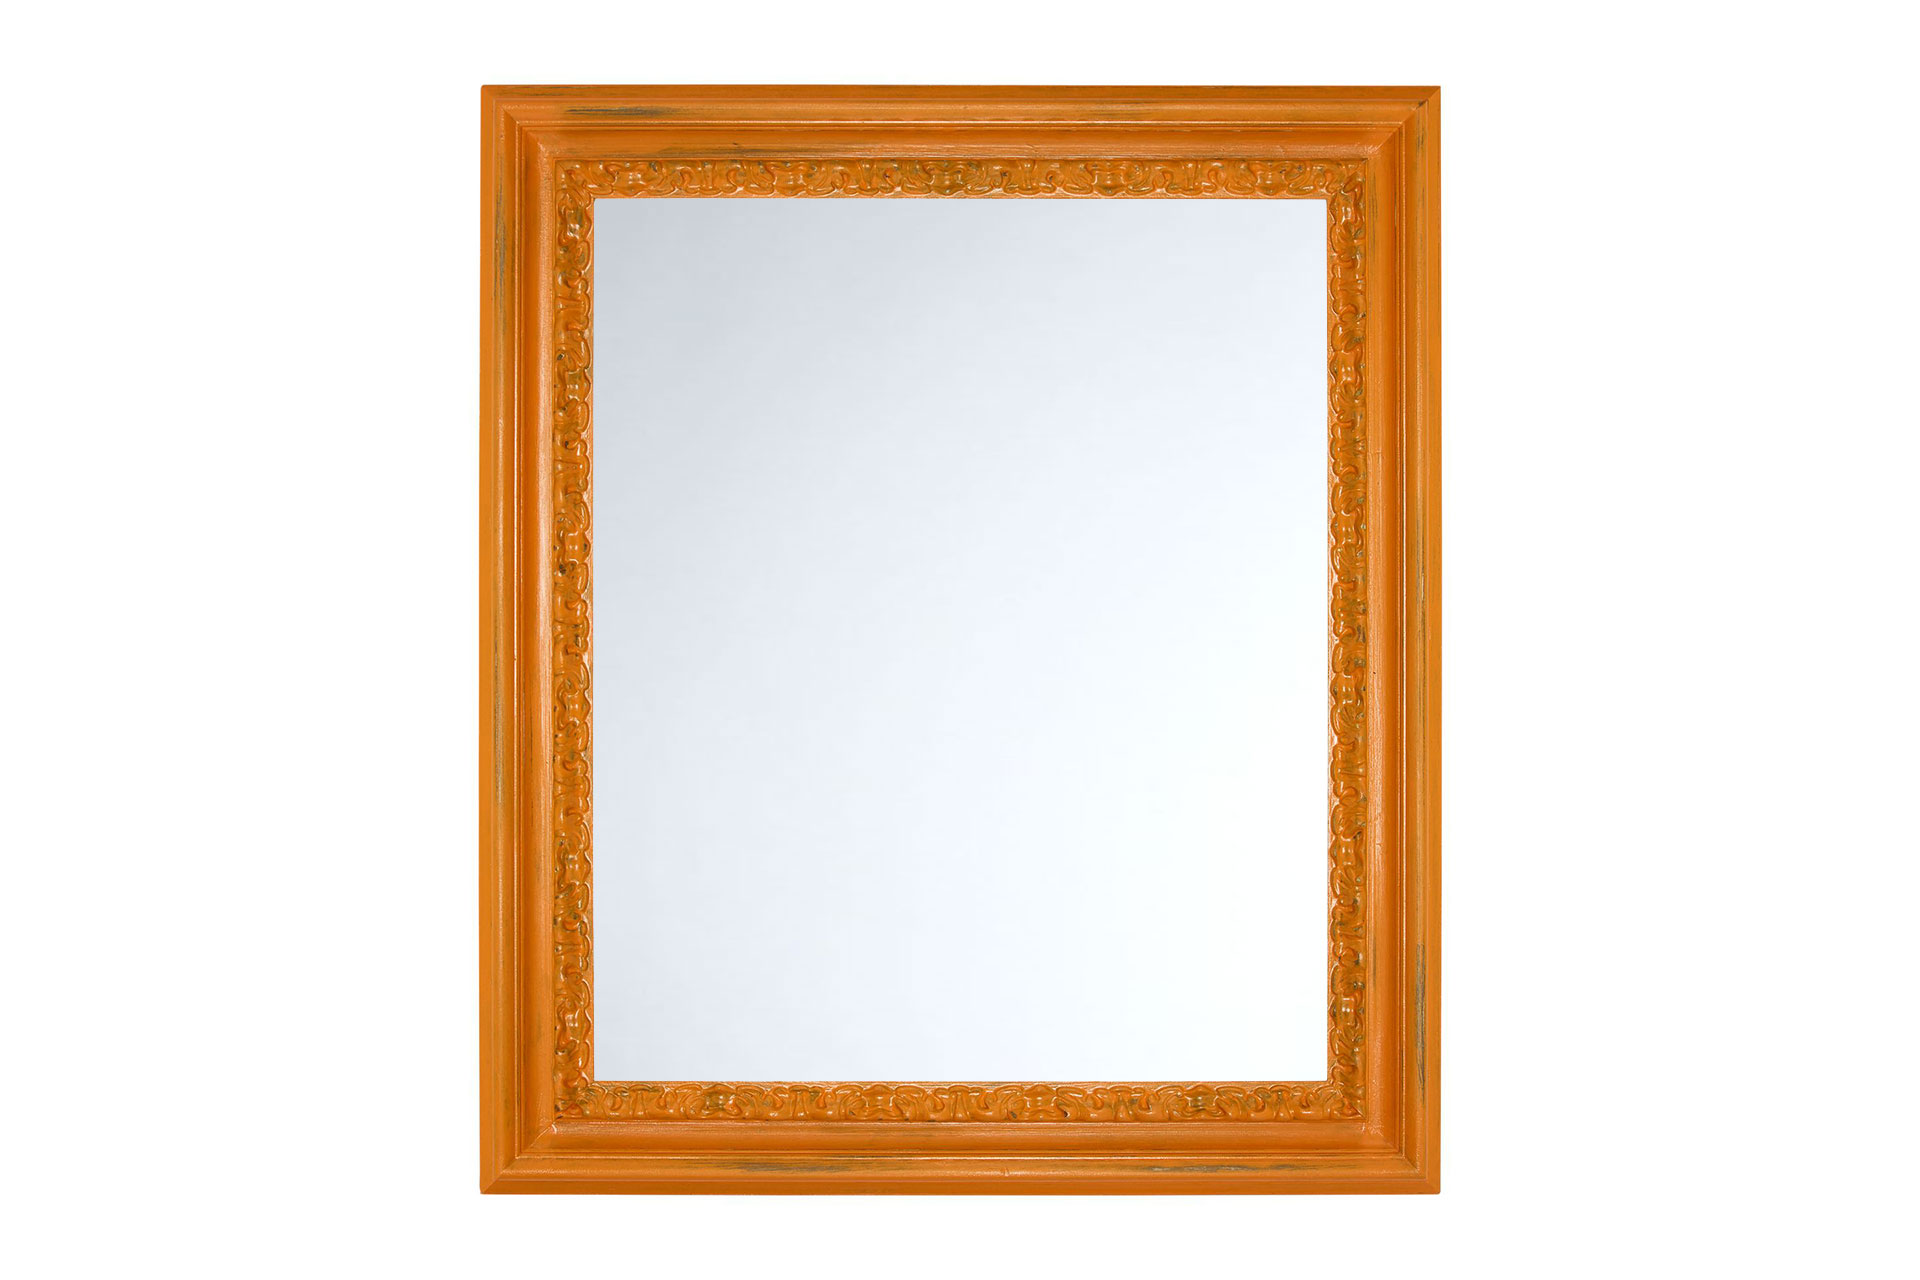 Wandspiegel Modell Metz, Spiegel: Facettenspiegel, Shabby-Chic Style, Design/Farbe:  Braun/Orange, Raum: Flur, Innenbereich, Schlafzimmer, Wohnzimmer, Frontansicht Rahmen mit Spiegel